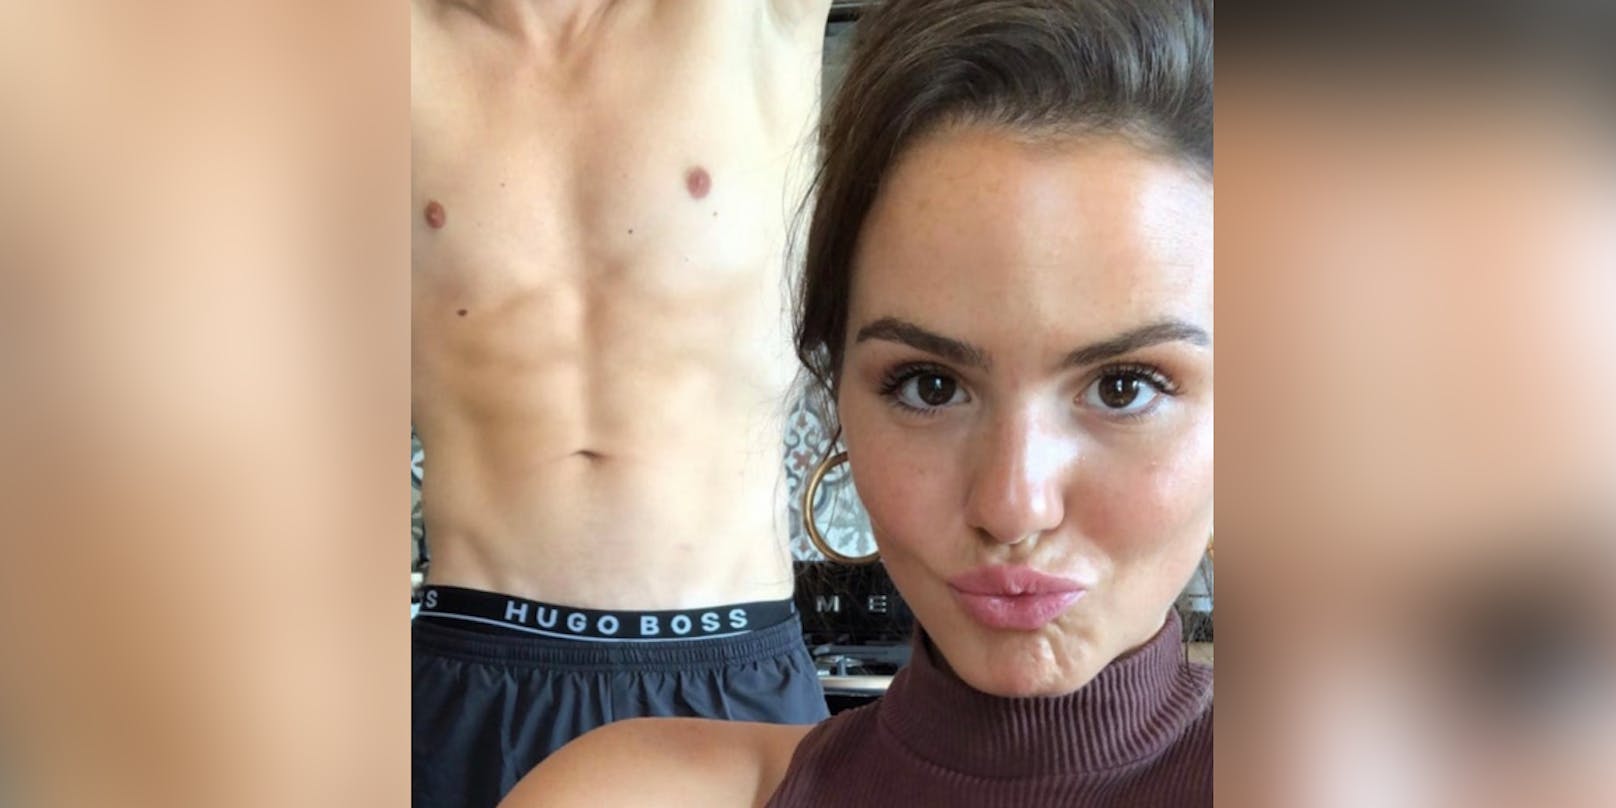 Ruby O. Fee postete ein Selfie mit einem nackten männlichen Oberkörper